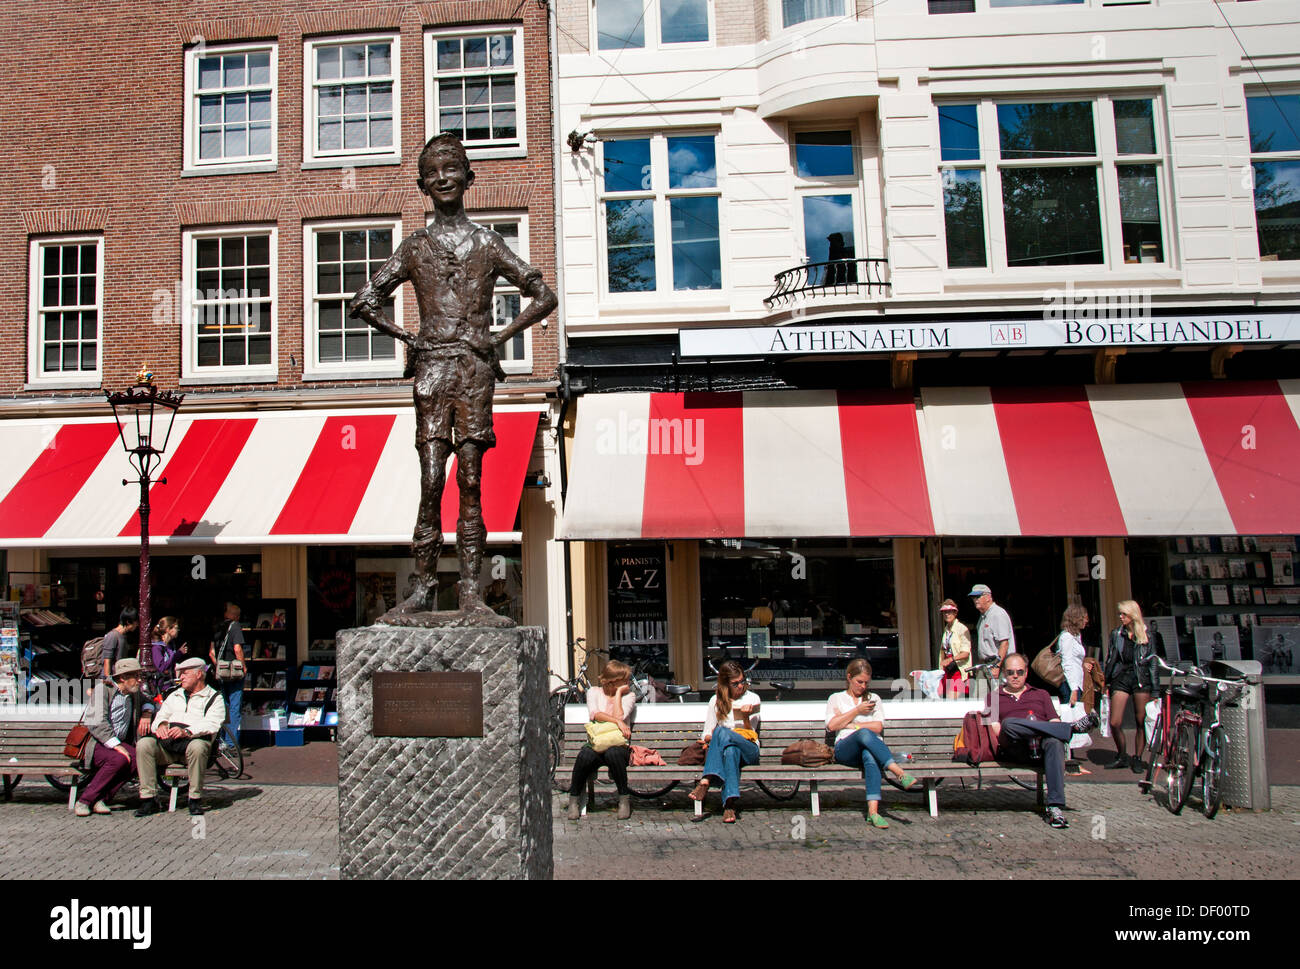 Niederlande - Amsterdam die Spui die Statue von Het Lieverdje, die die Jugend von Amsterdam Athene Boekhandel darstellt Stockfoto